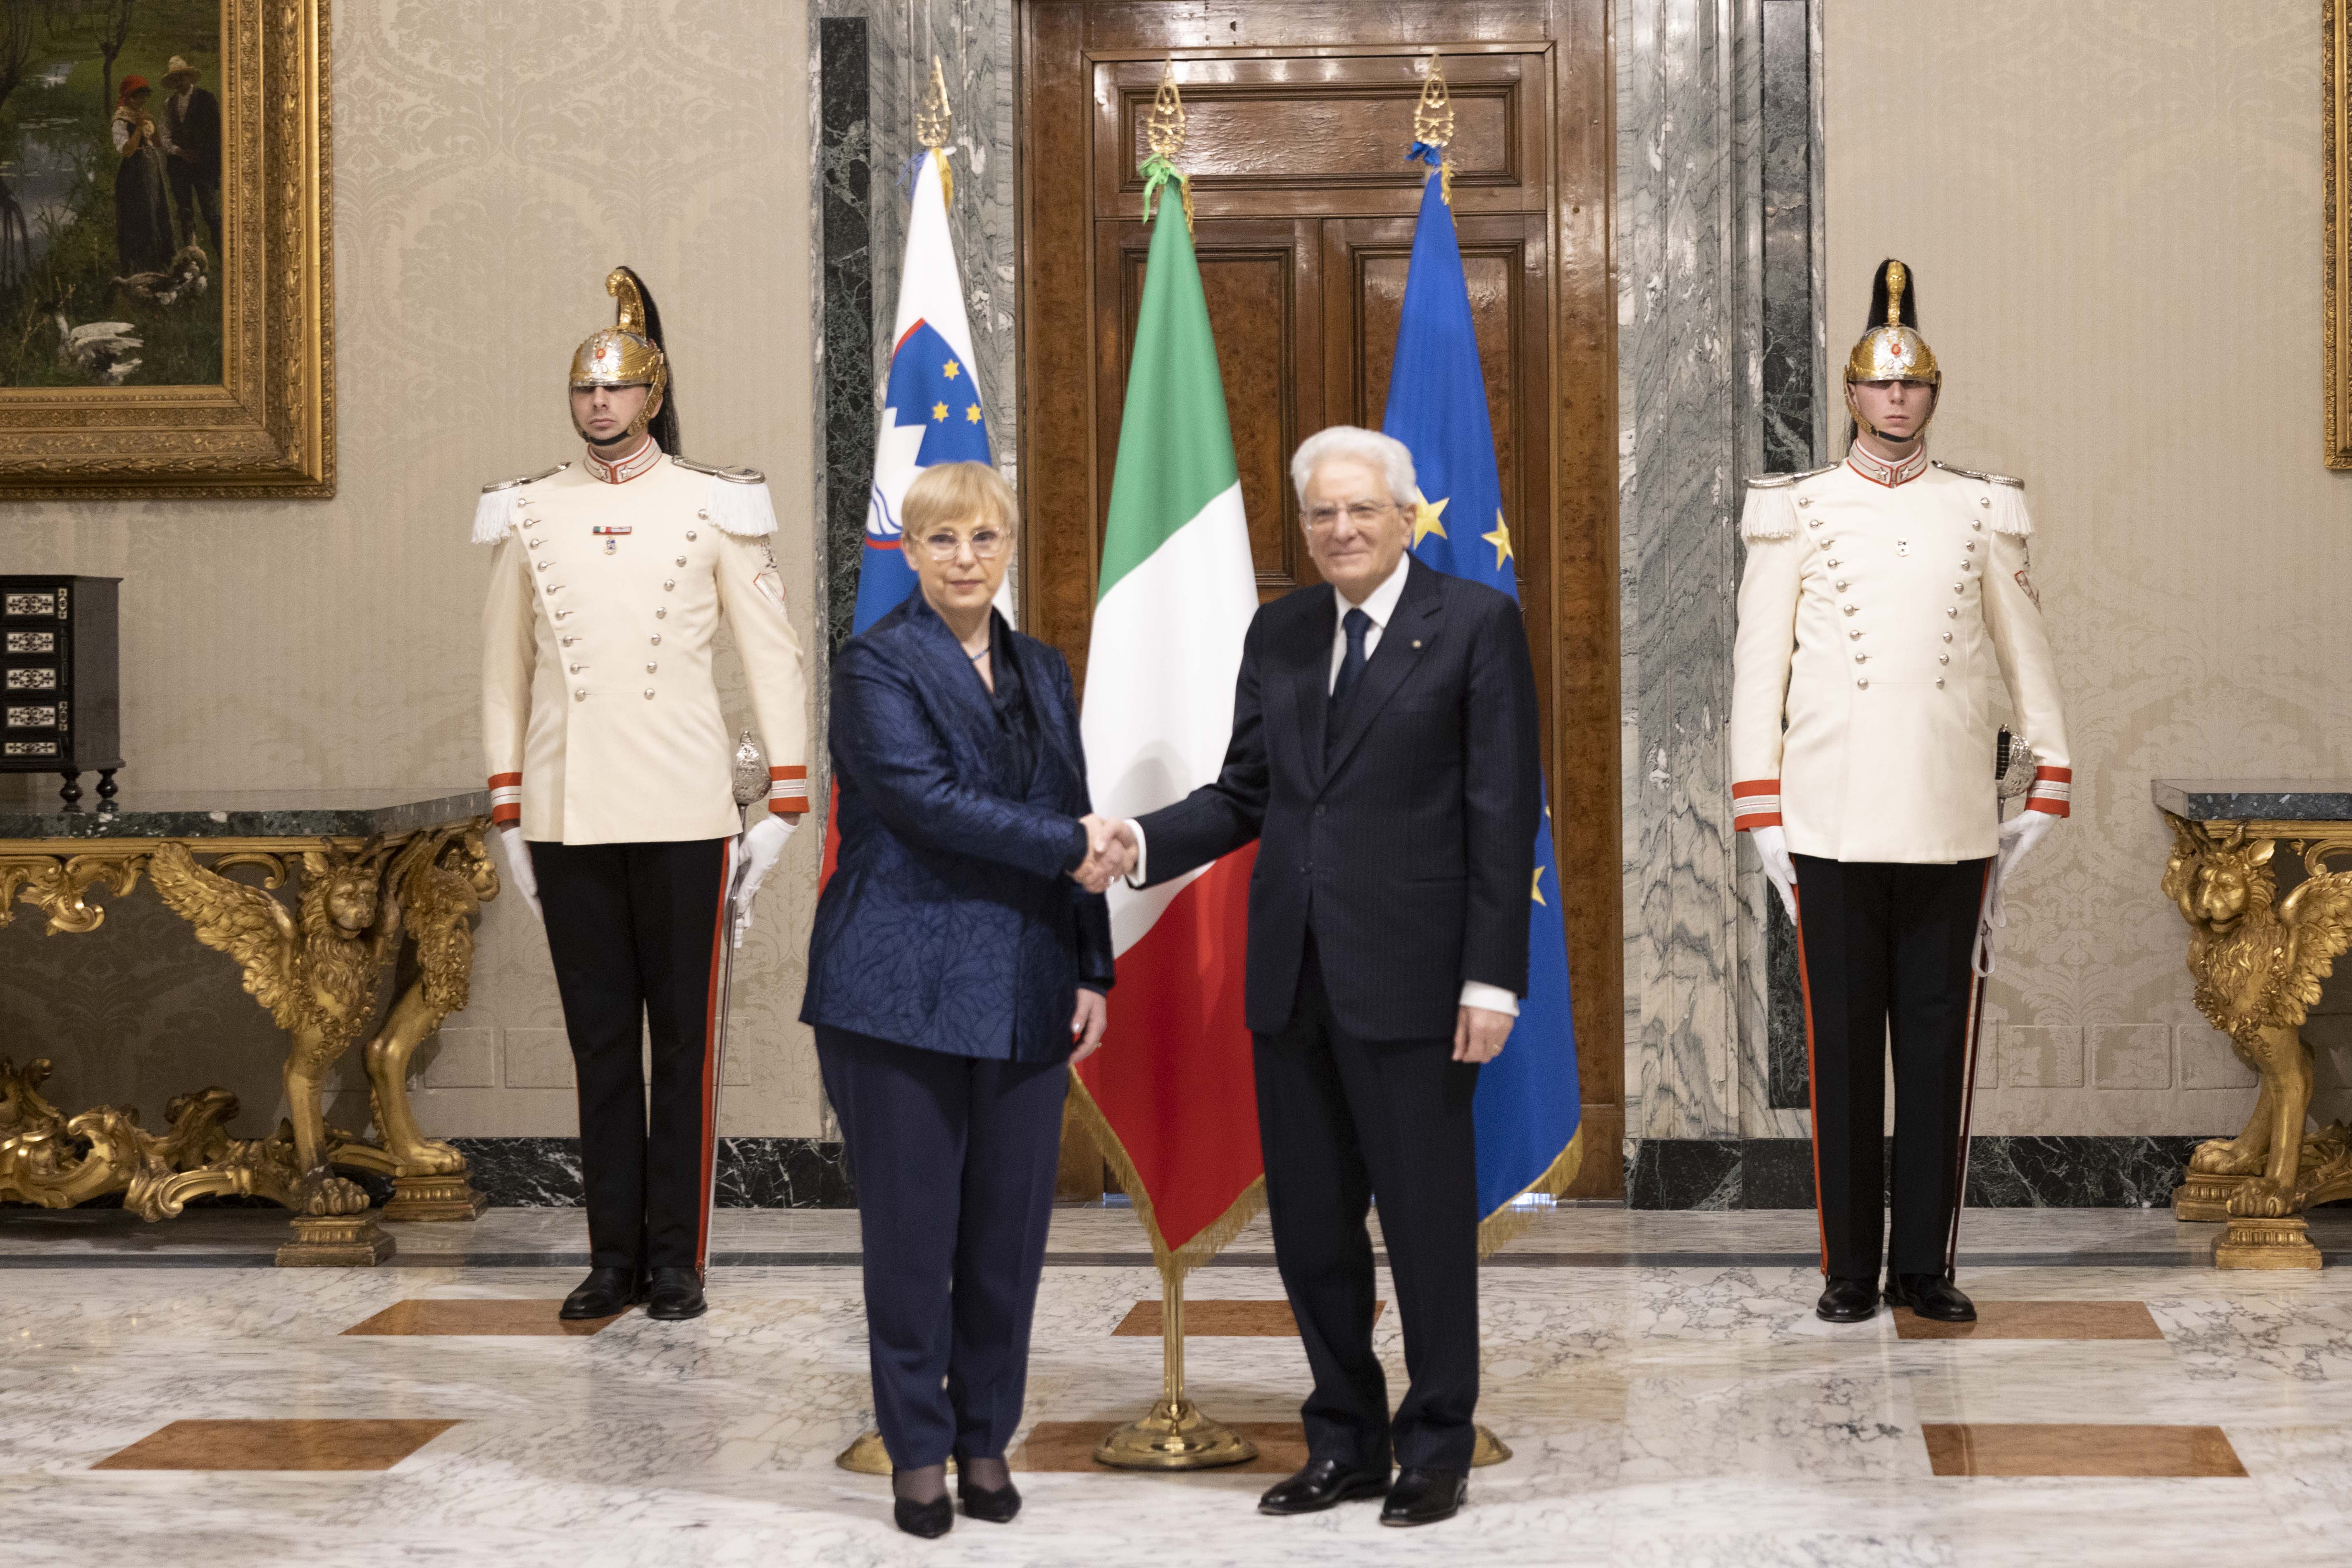 Uradni obisk pri predsedniku Italijanske republike